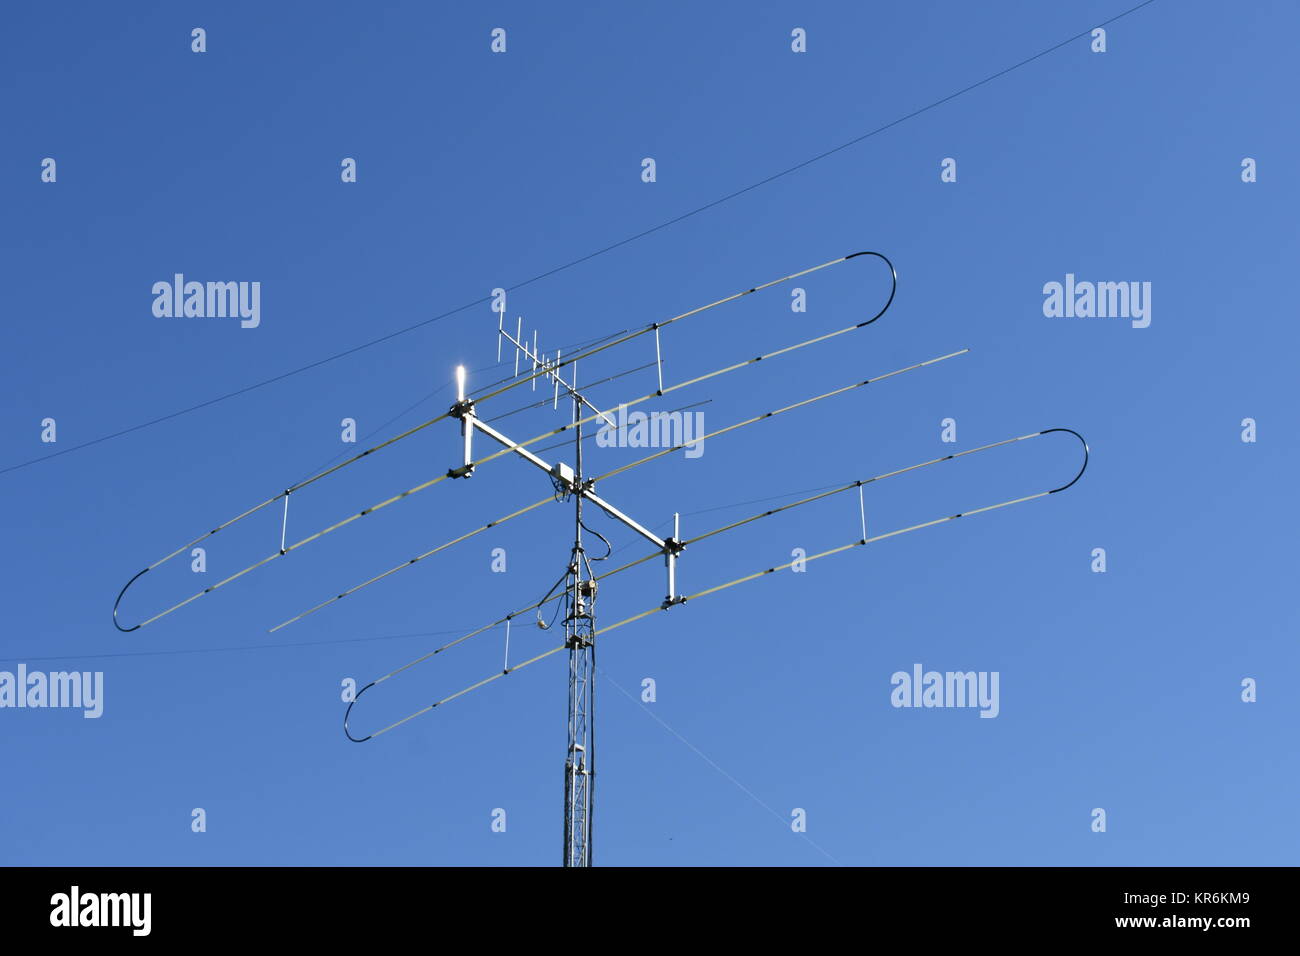 Antena,radio de jamón,amateur,antena de radio de onda corta,enviar,recibir,radio,comunicación Foto de stock